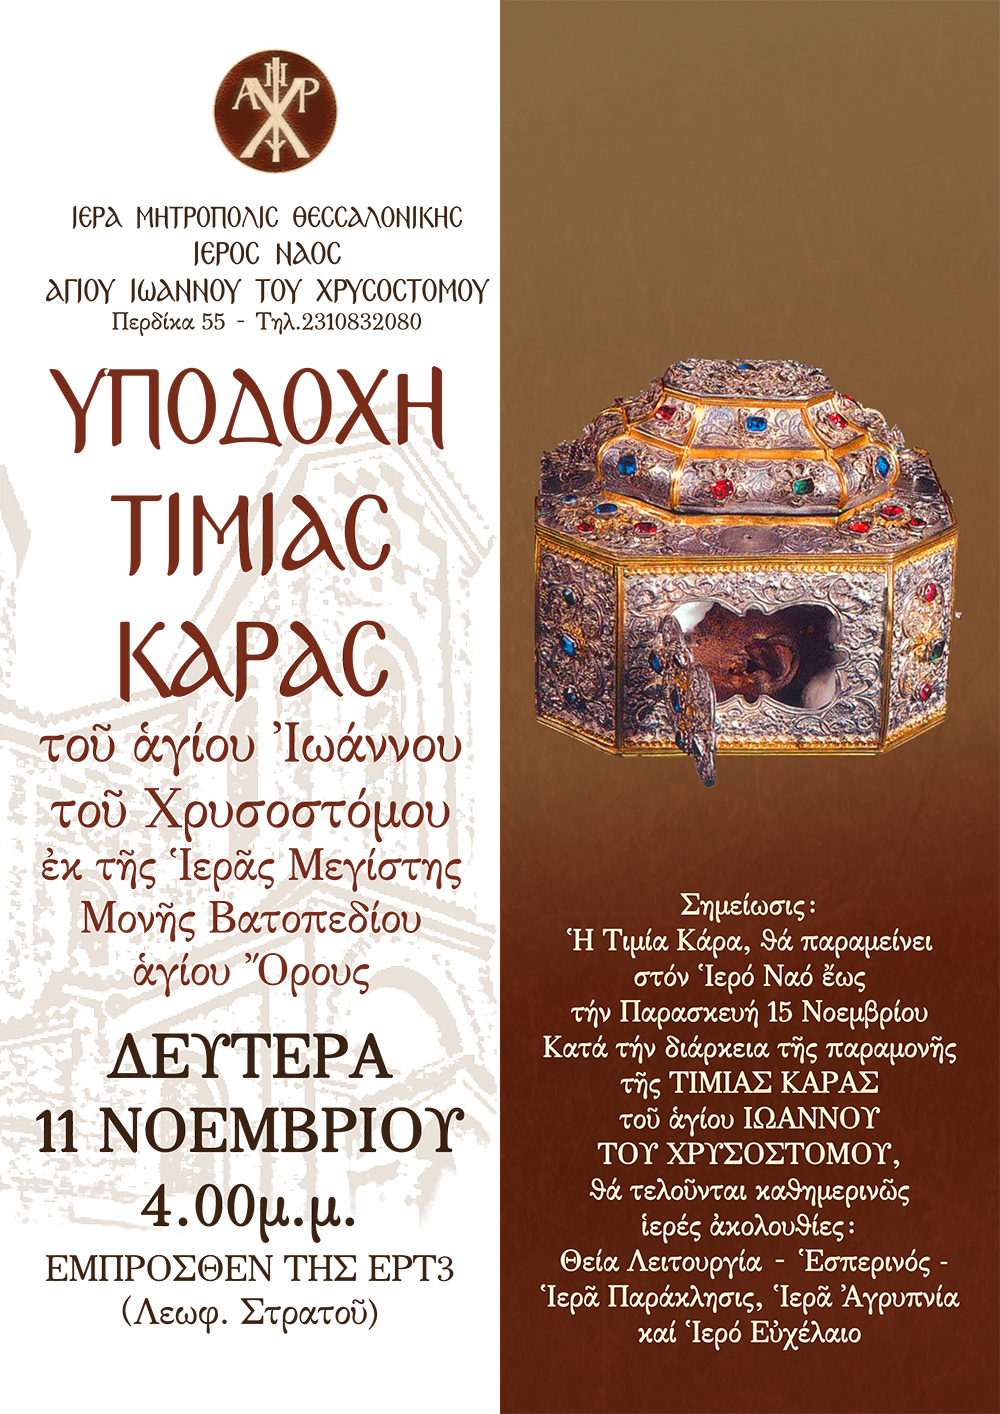 Υποδοχἠ της Τιμίας Κάρας του Αγίου Iωάννου Χρυσοστόμου από την Ι.Μονή Βατοπεδίου, το Άγιον Όρος στην Θεσσαλονίκη στον Ναό αγίου Ιωάννου Χρυσοστόμου (Περιοχή Θεαγενίου)